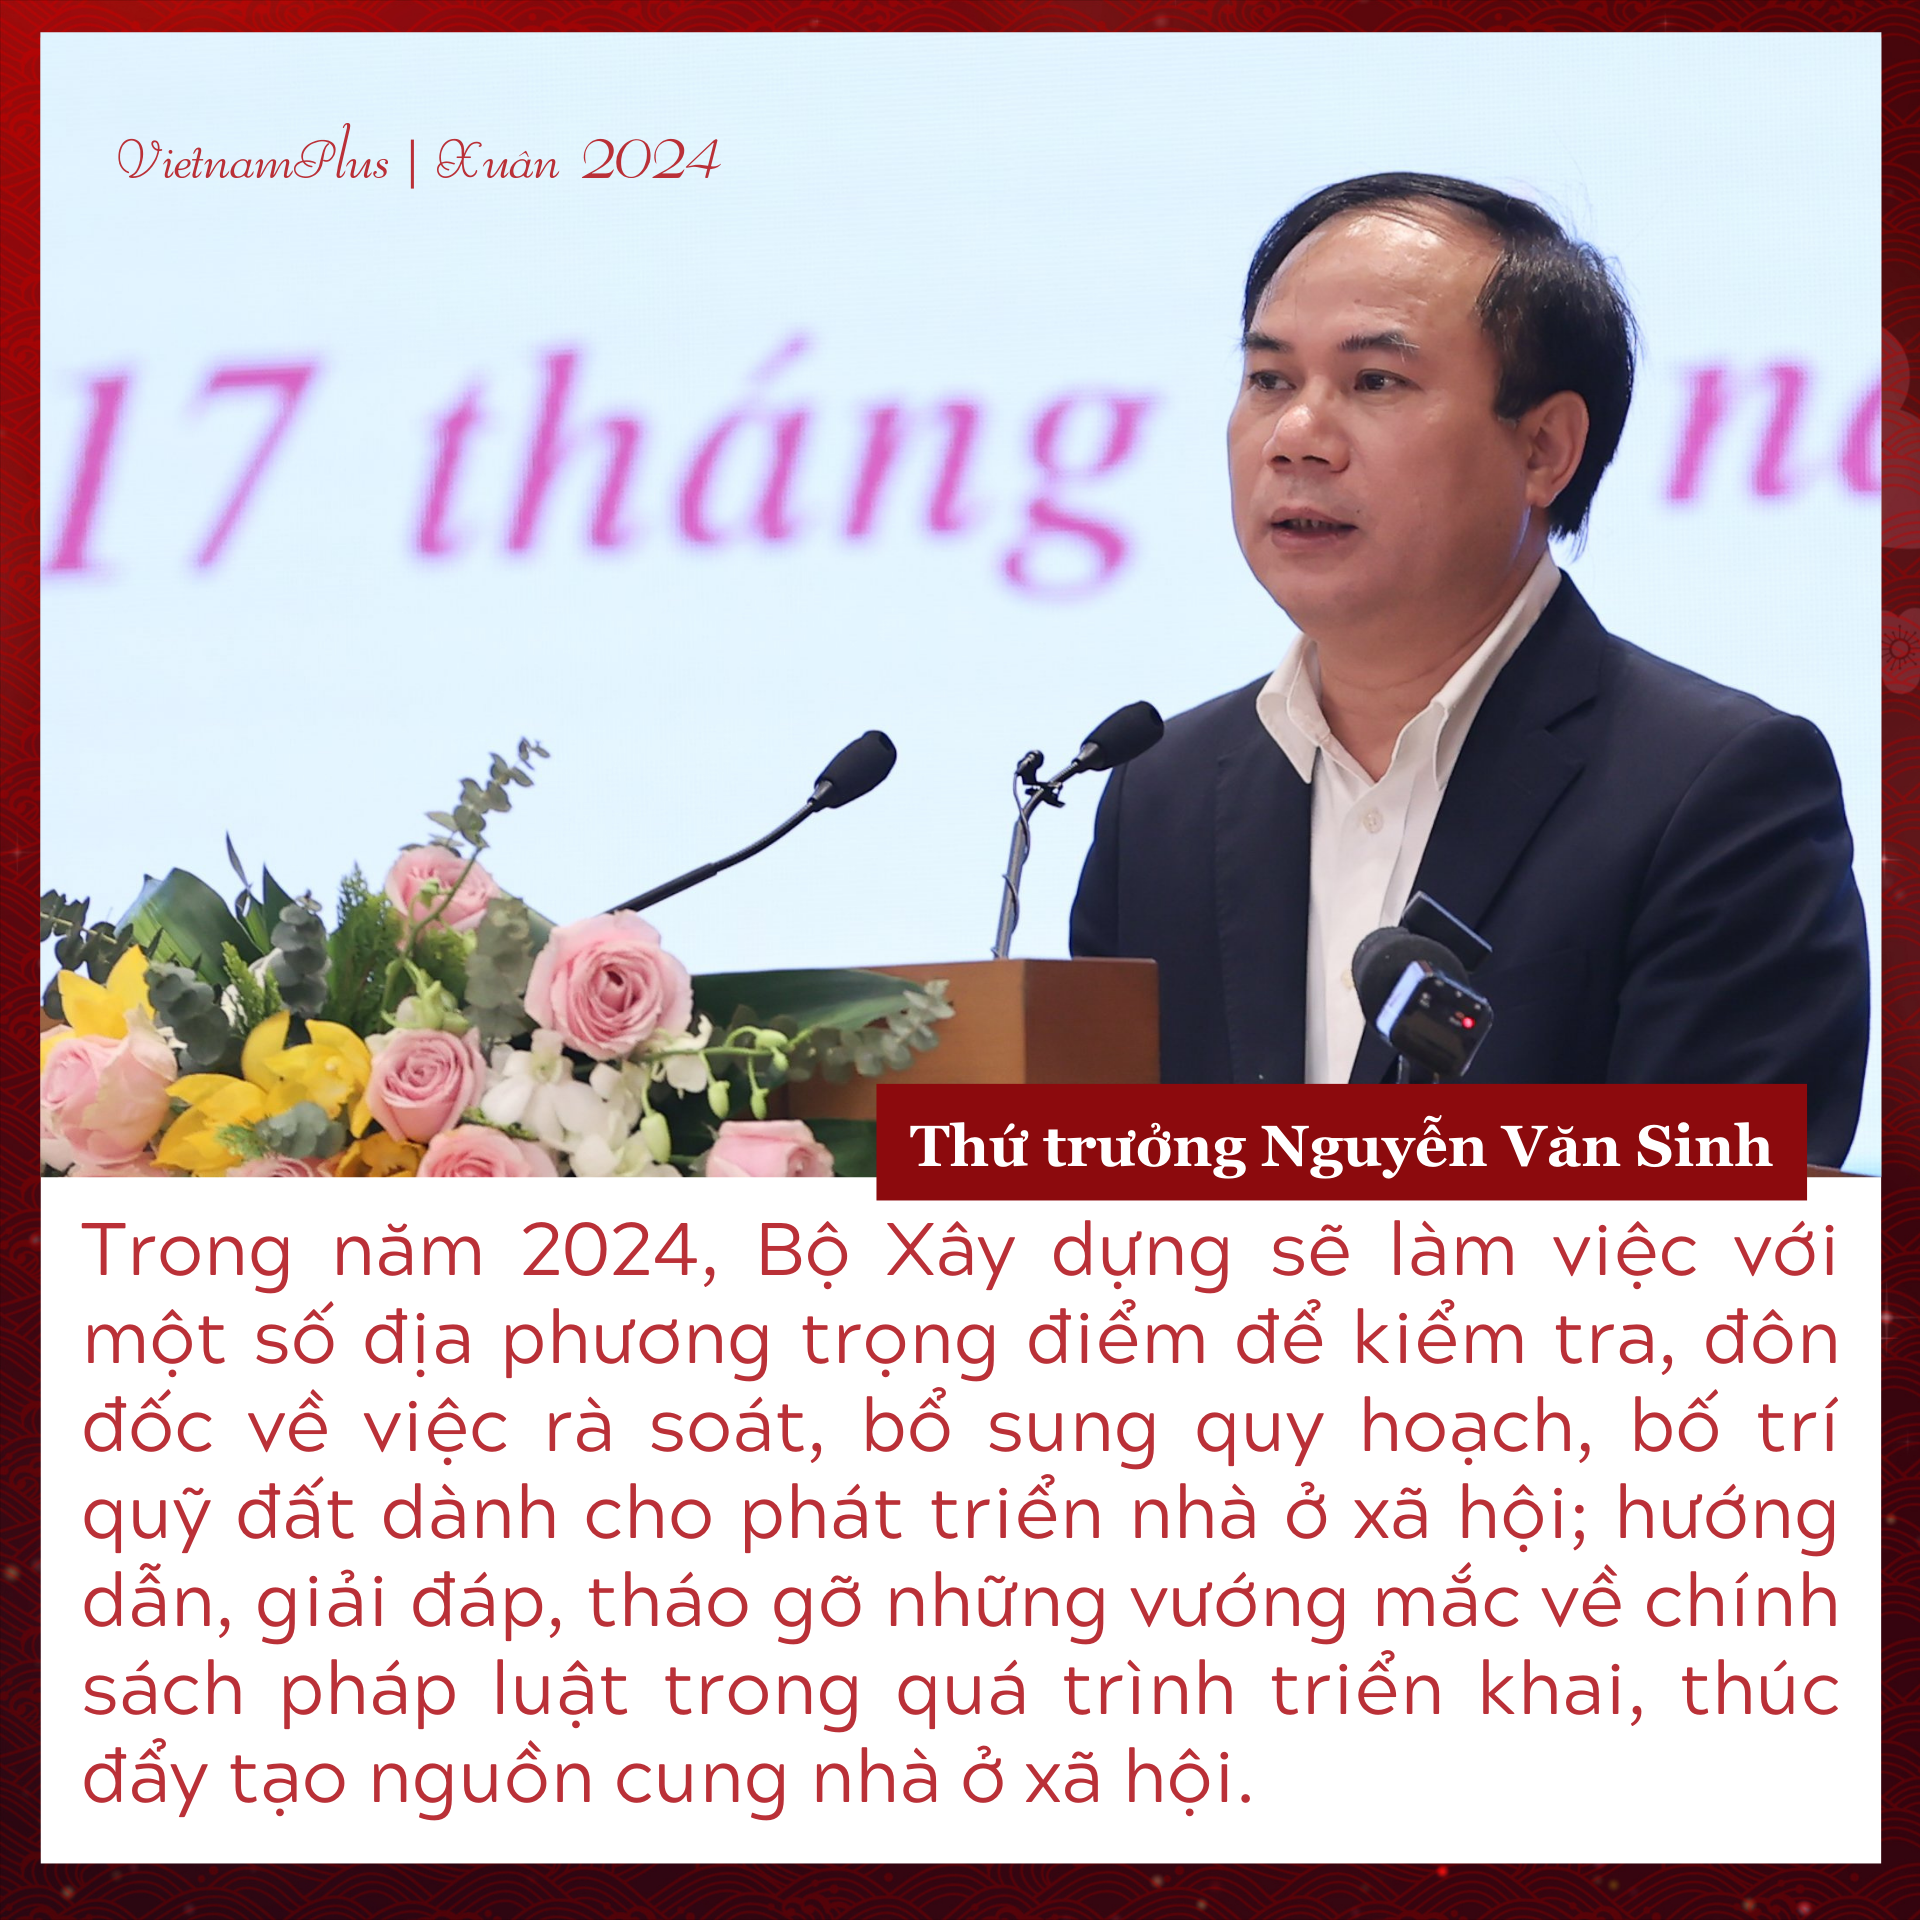 Thứ trưởng Bộ Xây dựng Nguyễn Văn Sinh: Vững vàng 